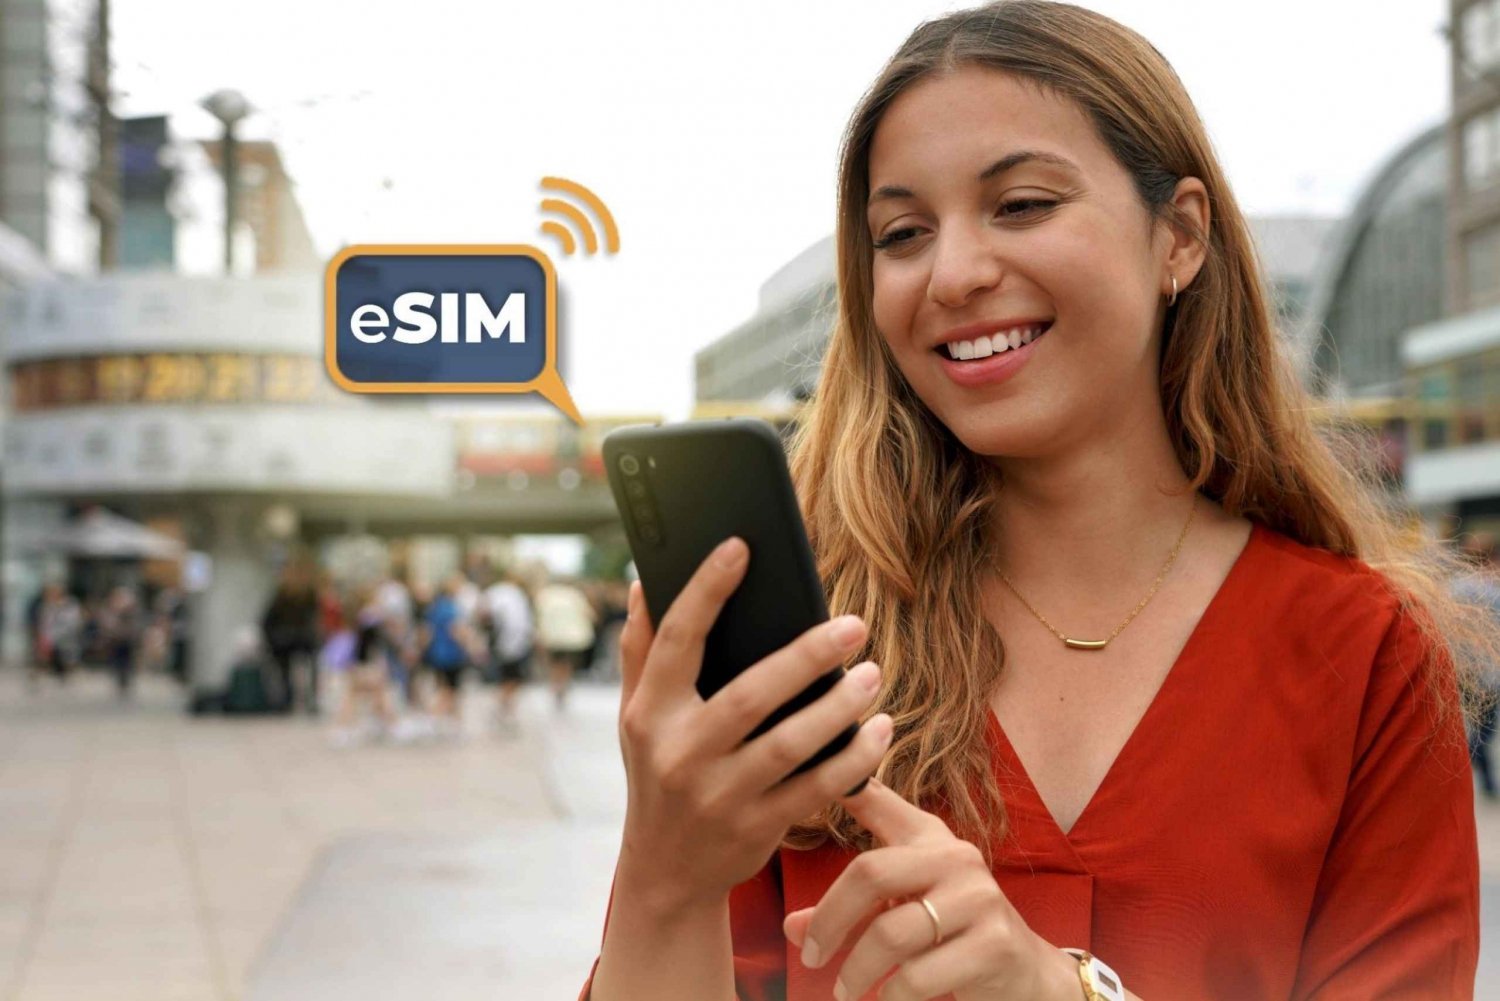 Berlin&Allemagne : Internet illimité dans l'UE avec eSIM Mobile Data